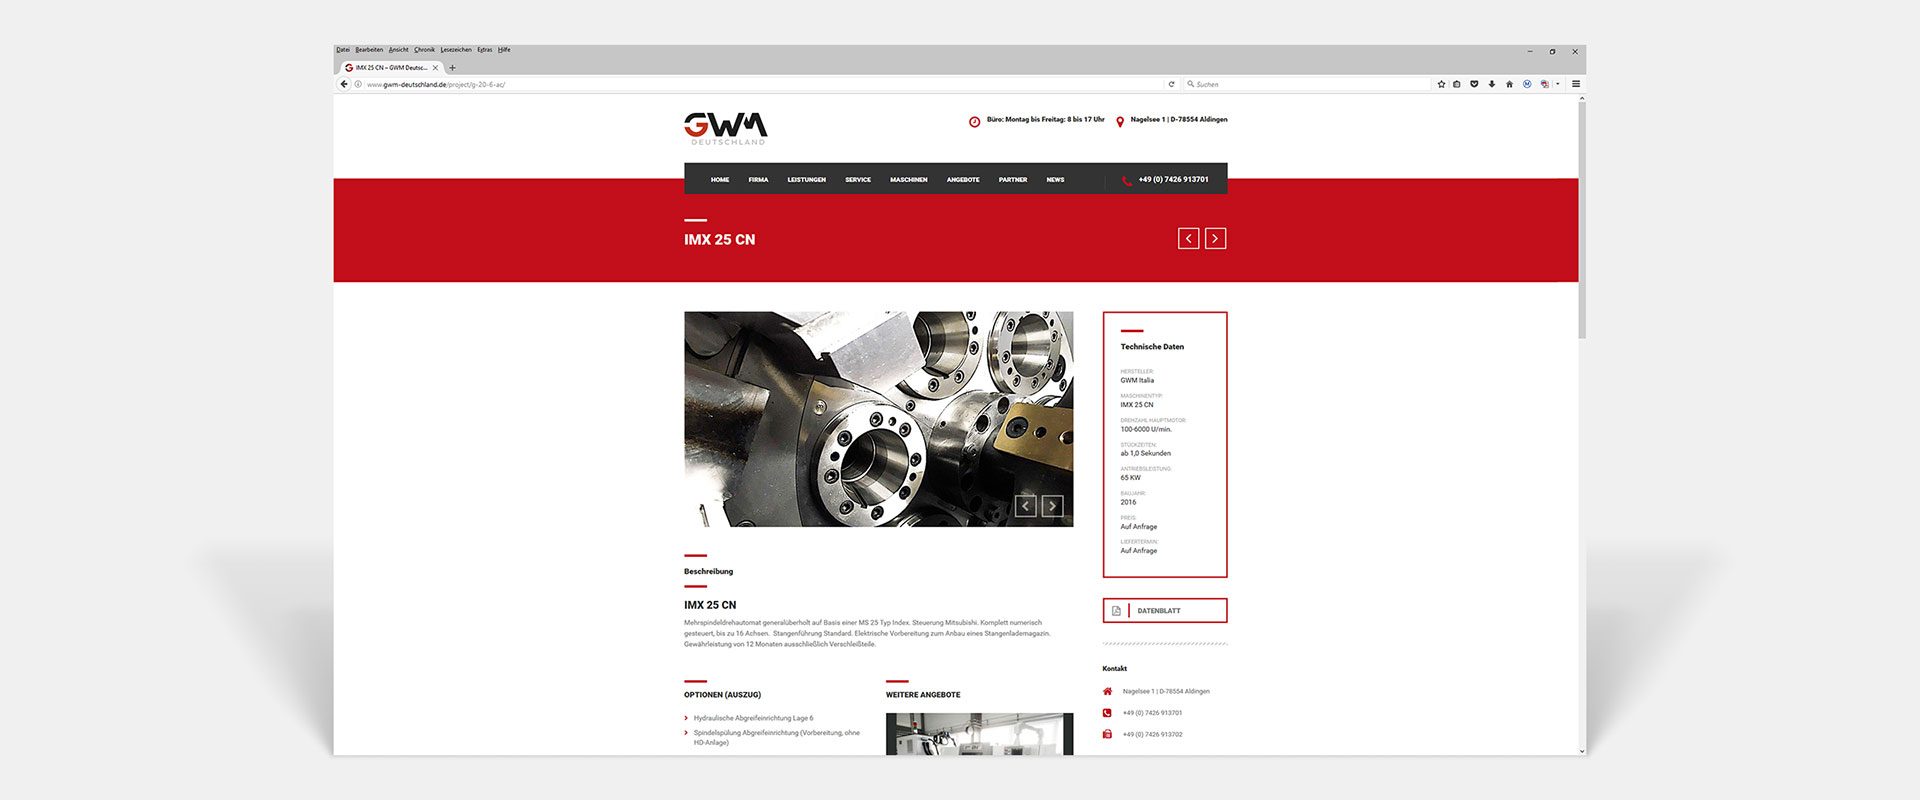 GWM Deutschland GmbH Responsive Website Angebote by Hirschburg Werbeagentur